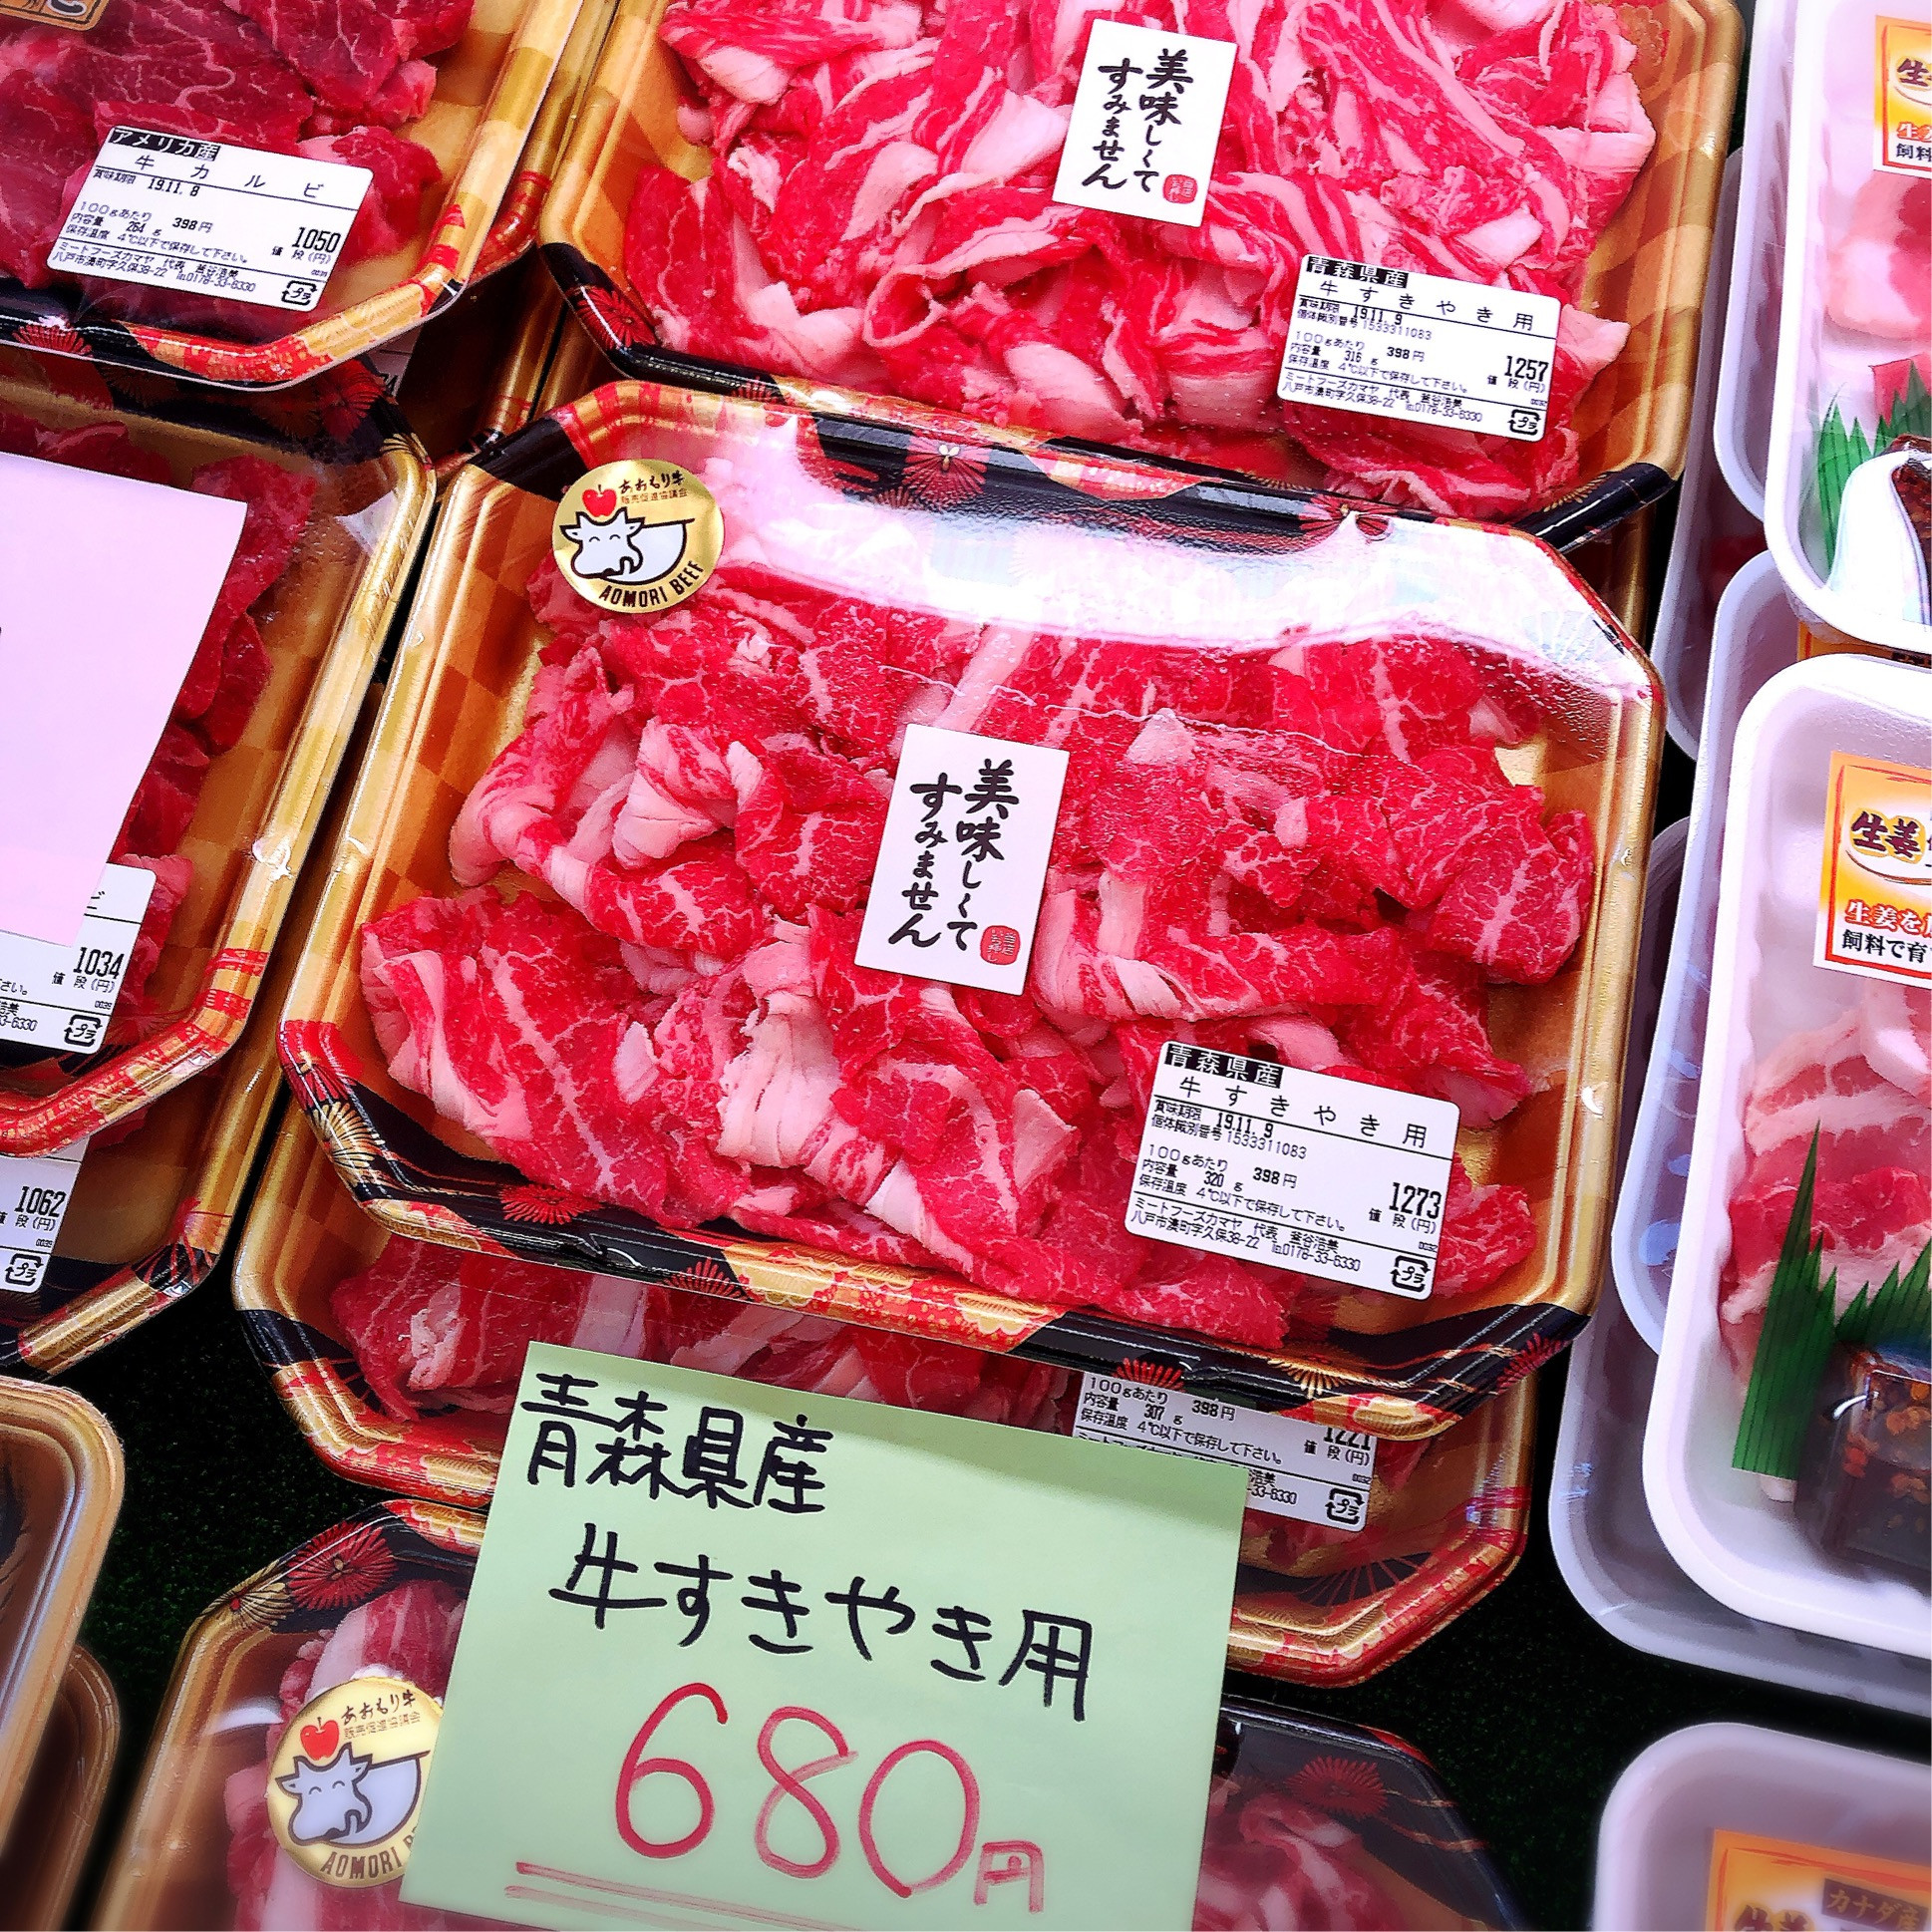 本日は青森県産牛すき焼き用がお買得です。